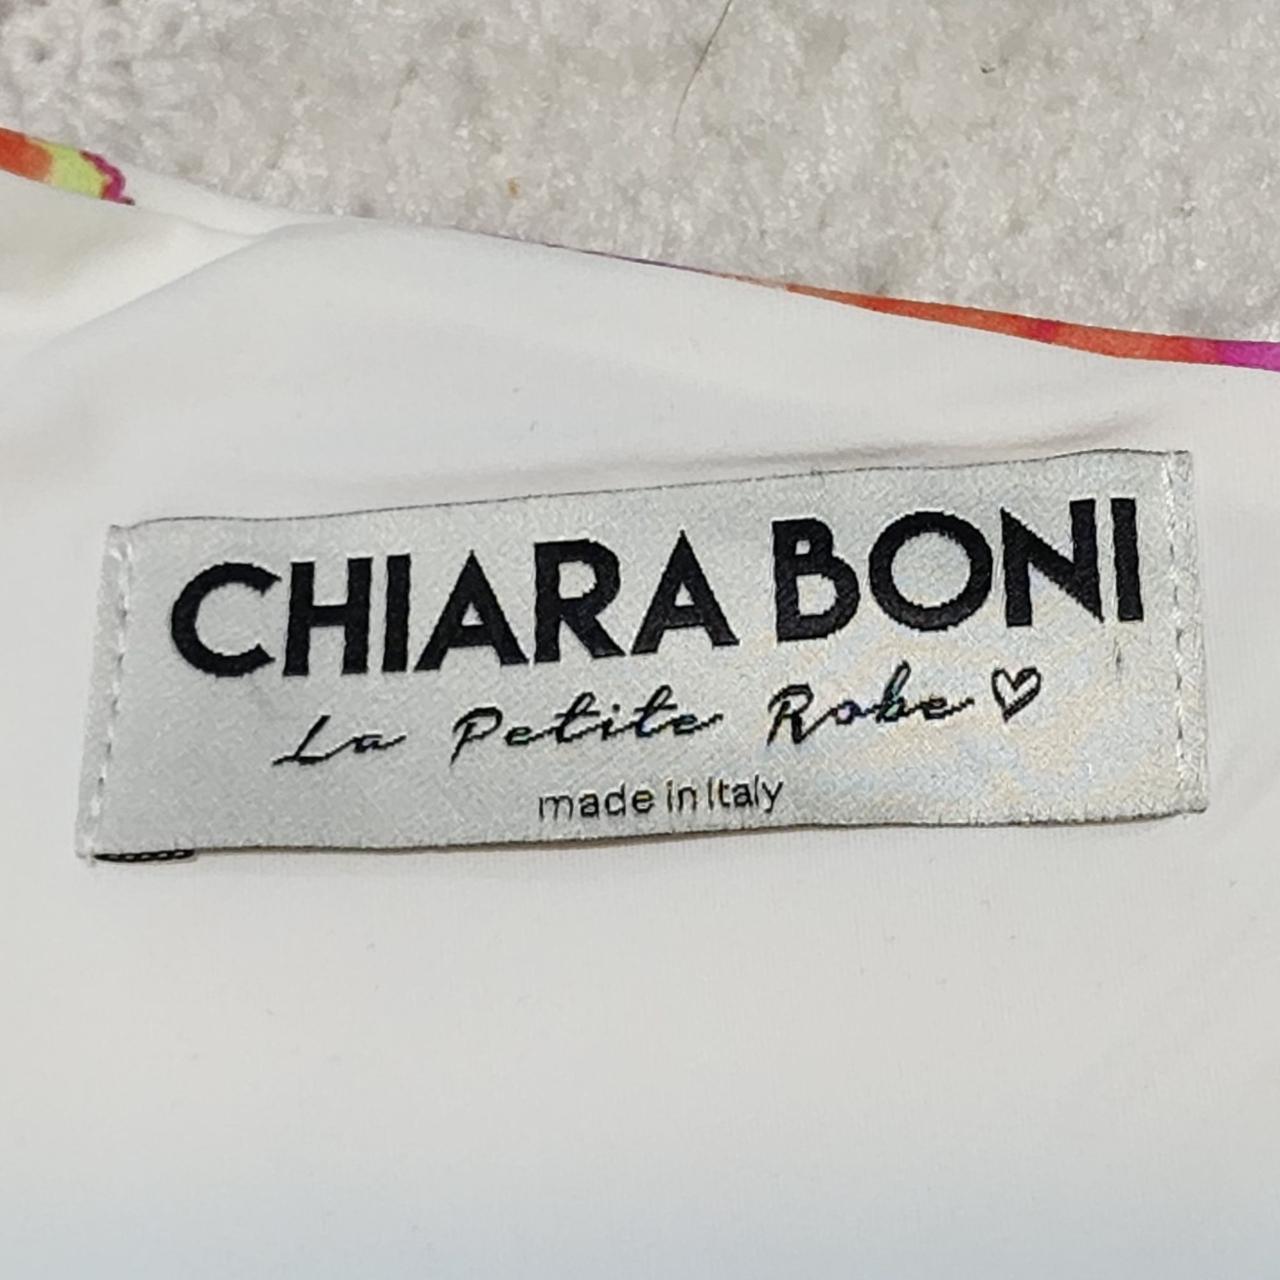 Chiara Boni La Petite Robe Women's White and Pink Dress (4)